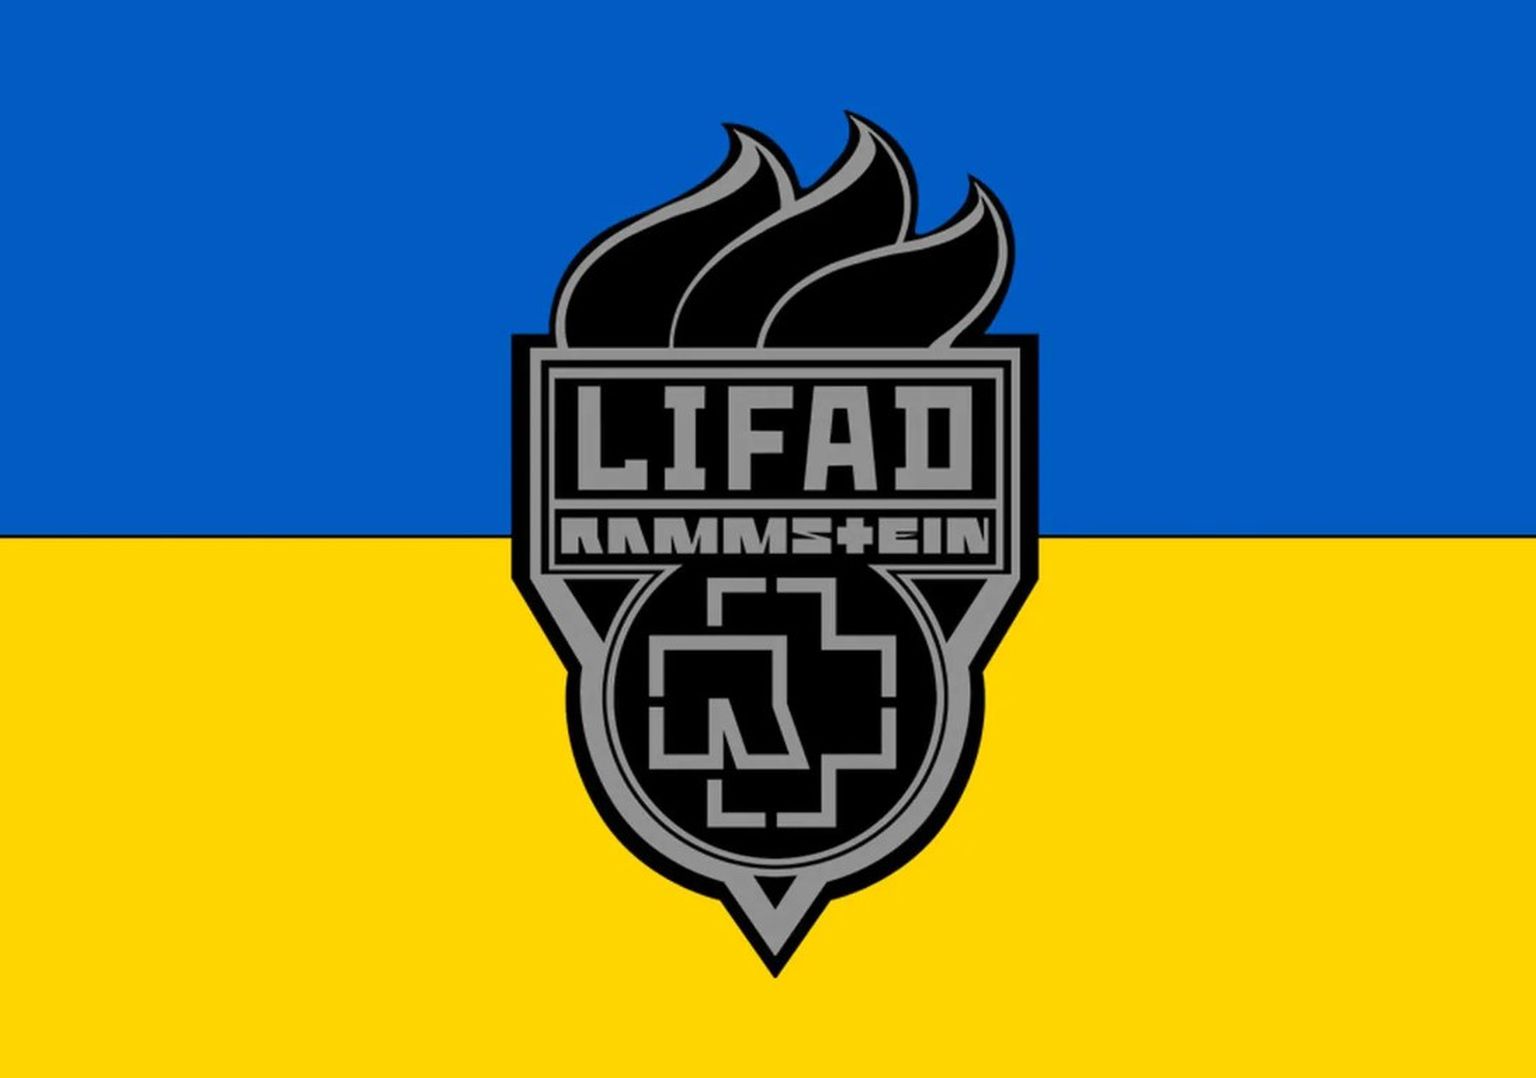 Изображение с сайта Rammstein в поддержку Украины. LIFAD - аббревиатура названия шестого альбома группы 2009 года Liebe Ist Für Alle Da (Любовь для всех)